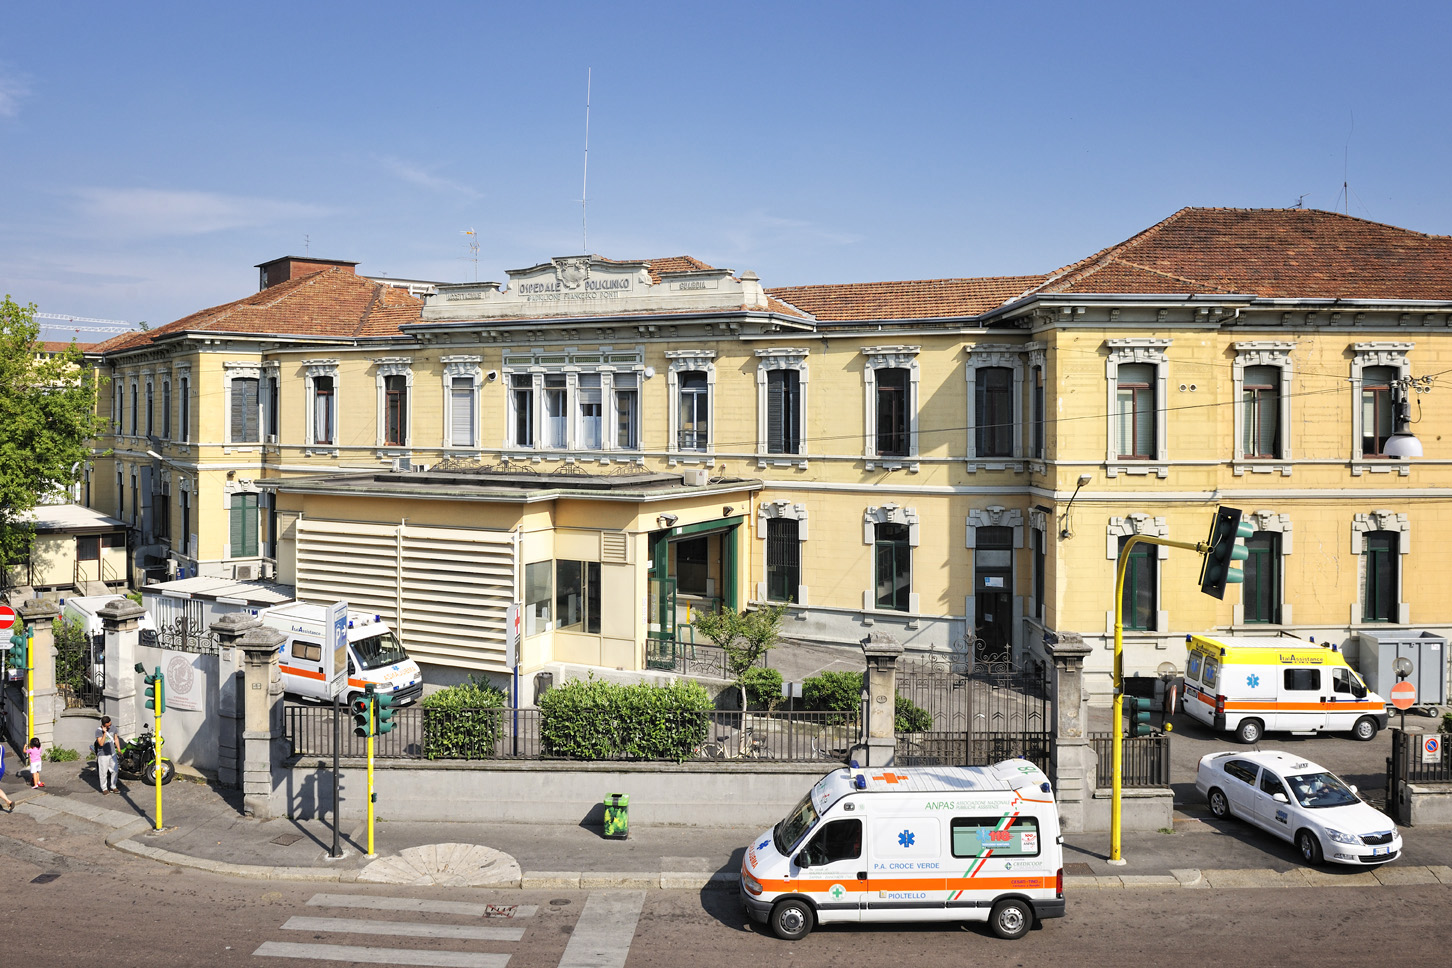 Policlinico di Milano - Wikipedia